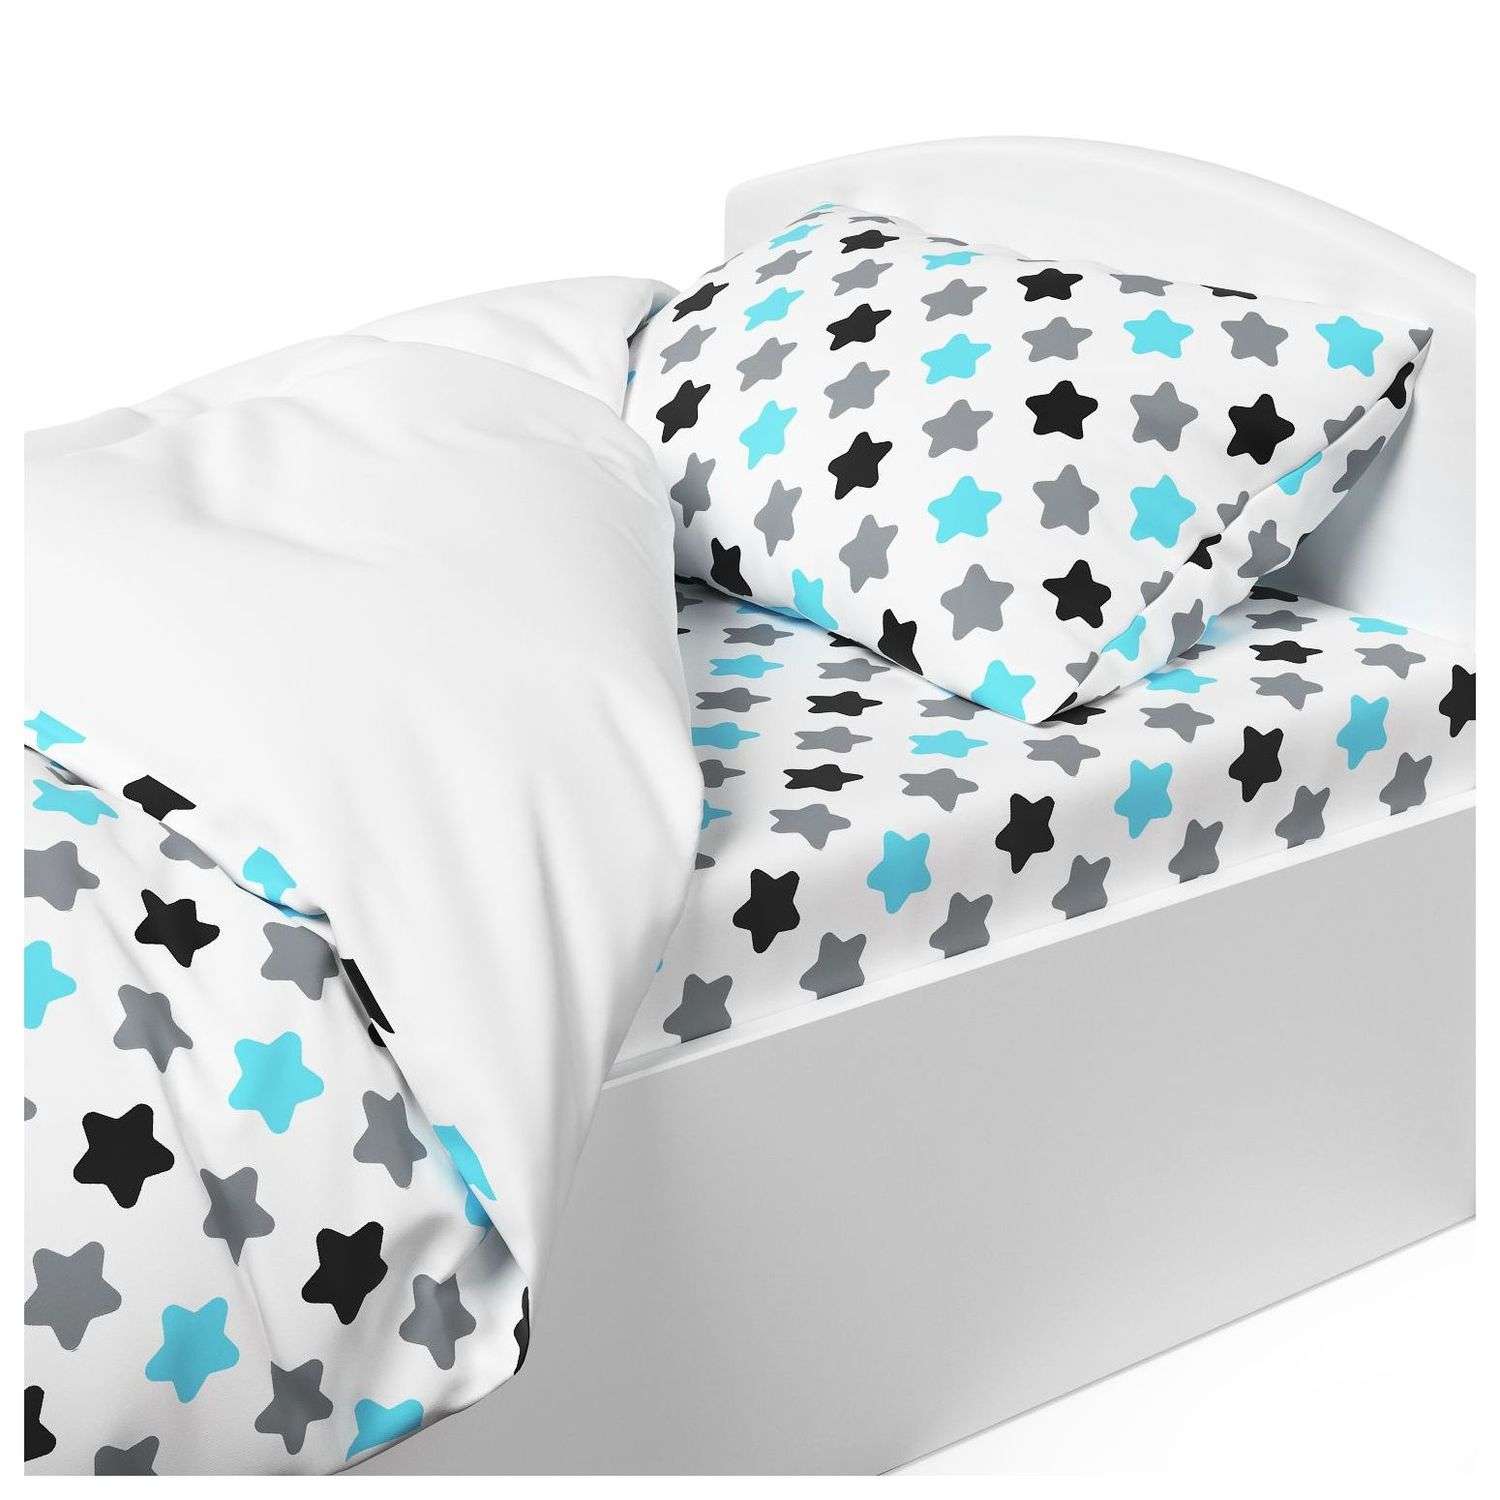 Комплект постельного белья Капризун Звездное небо 1.5спальный 3предмета - фото 6